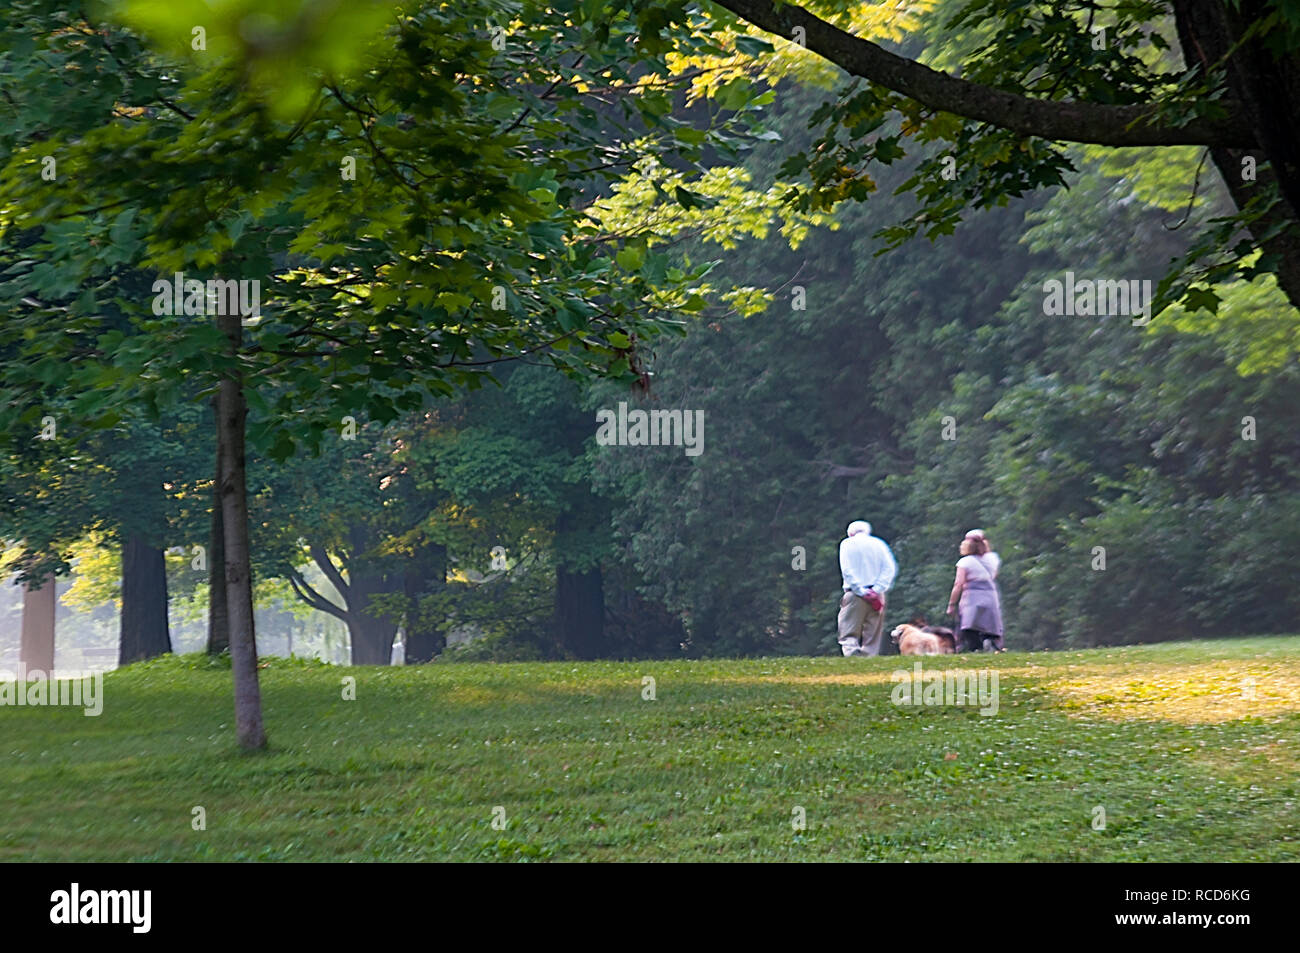 Zwei Senioren, eine männliche und eine weibliche, mit ihren Hunden in einem üppigen, grünen Park, Ontario, Kanada Stockfoto